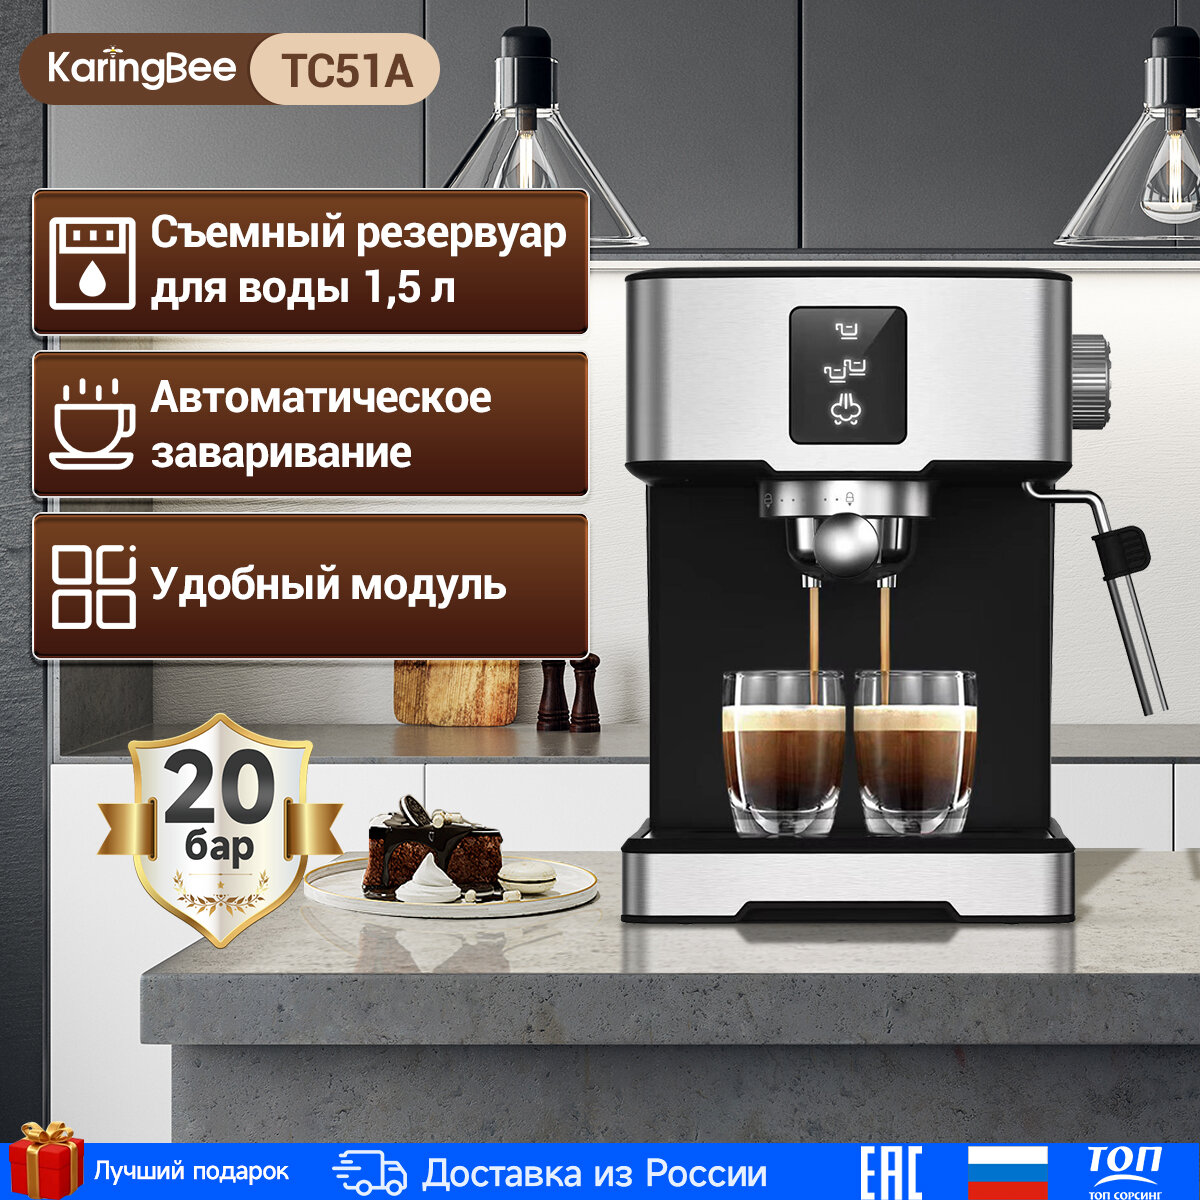 Полуавтоматическая кофемашина KaringBee TC51A